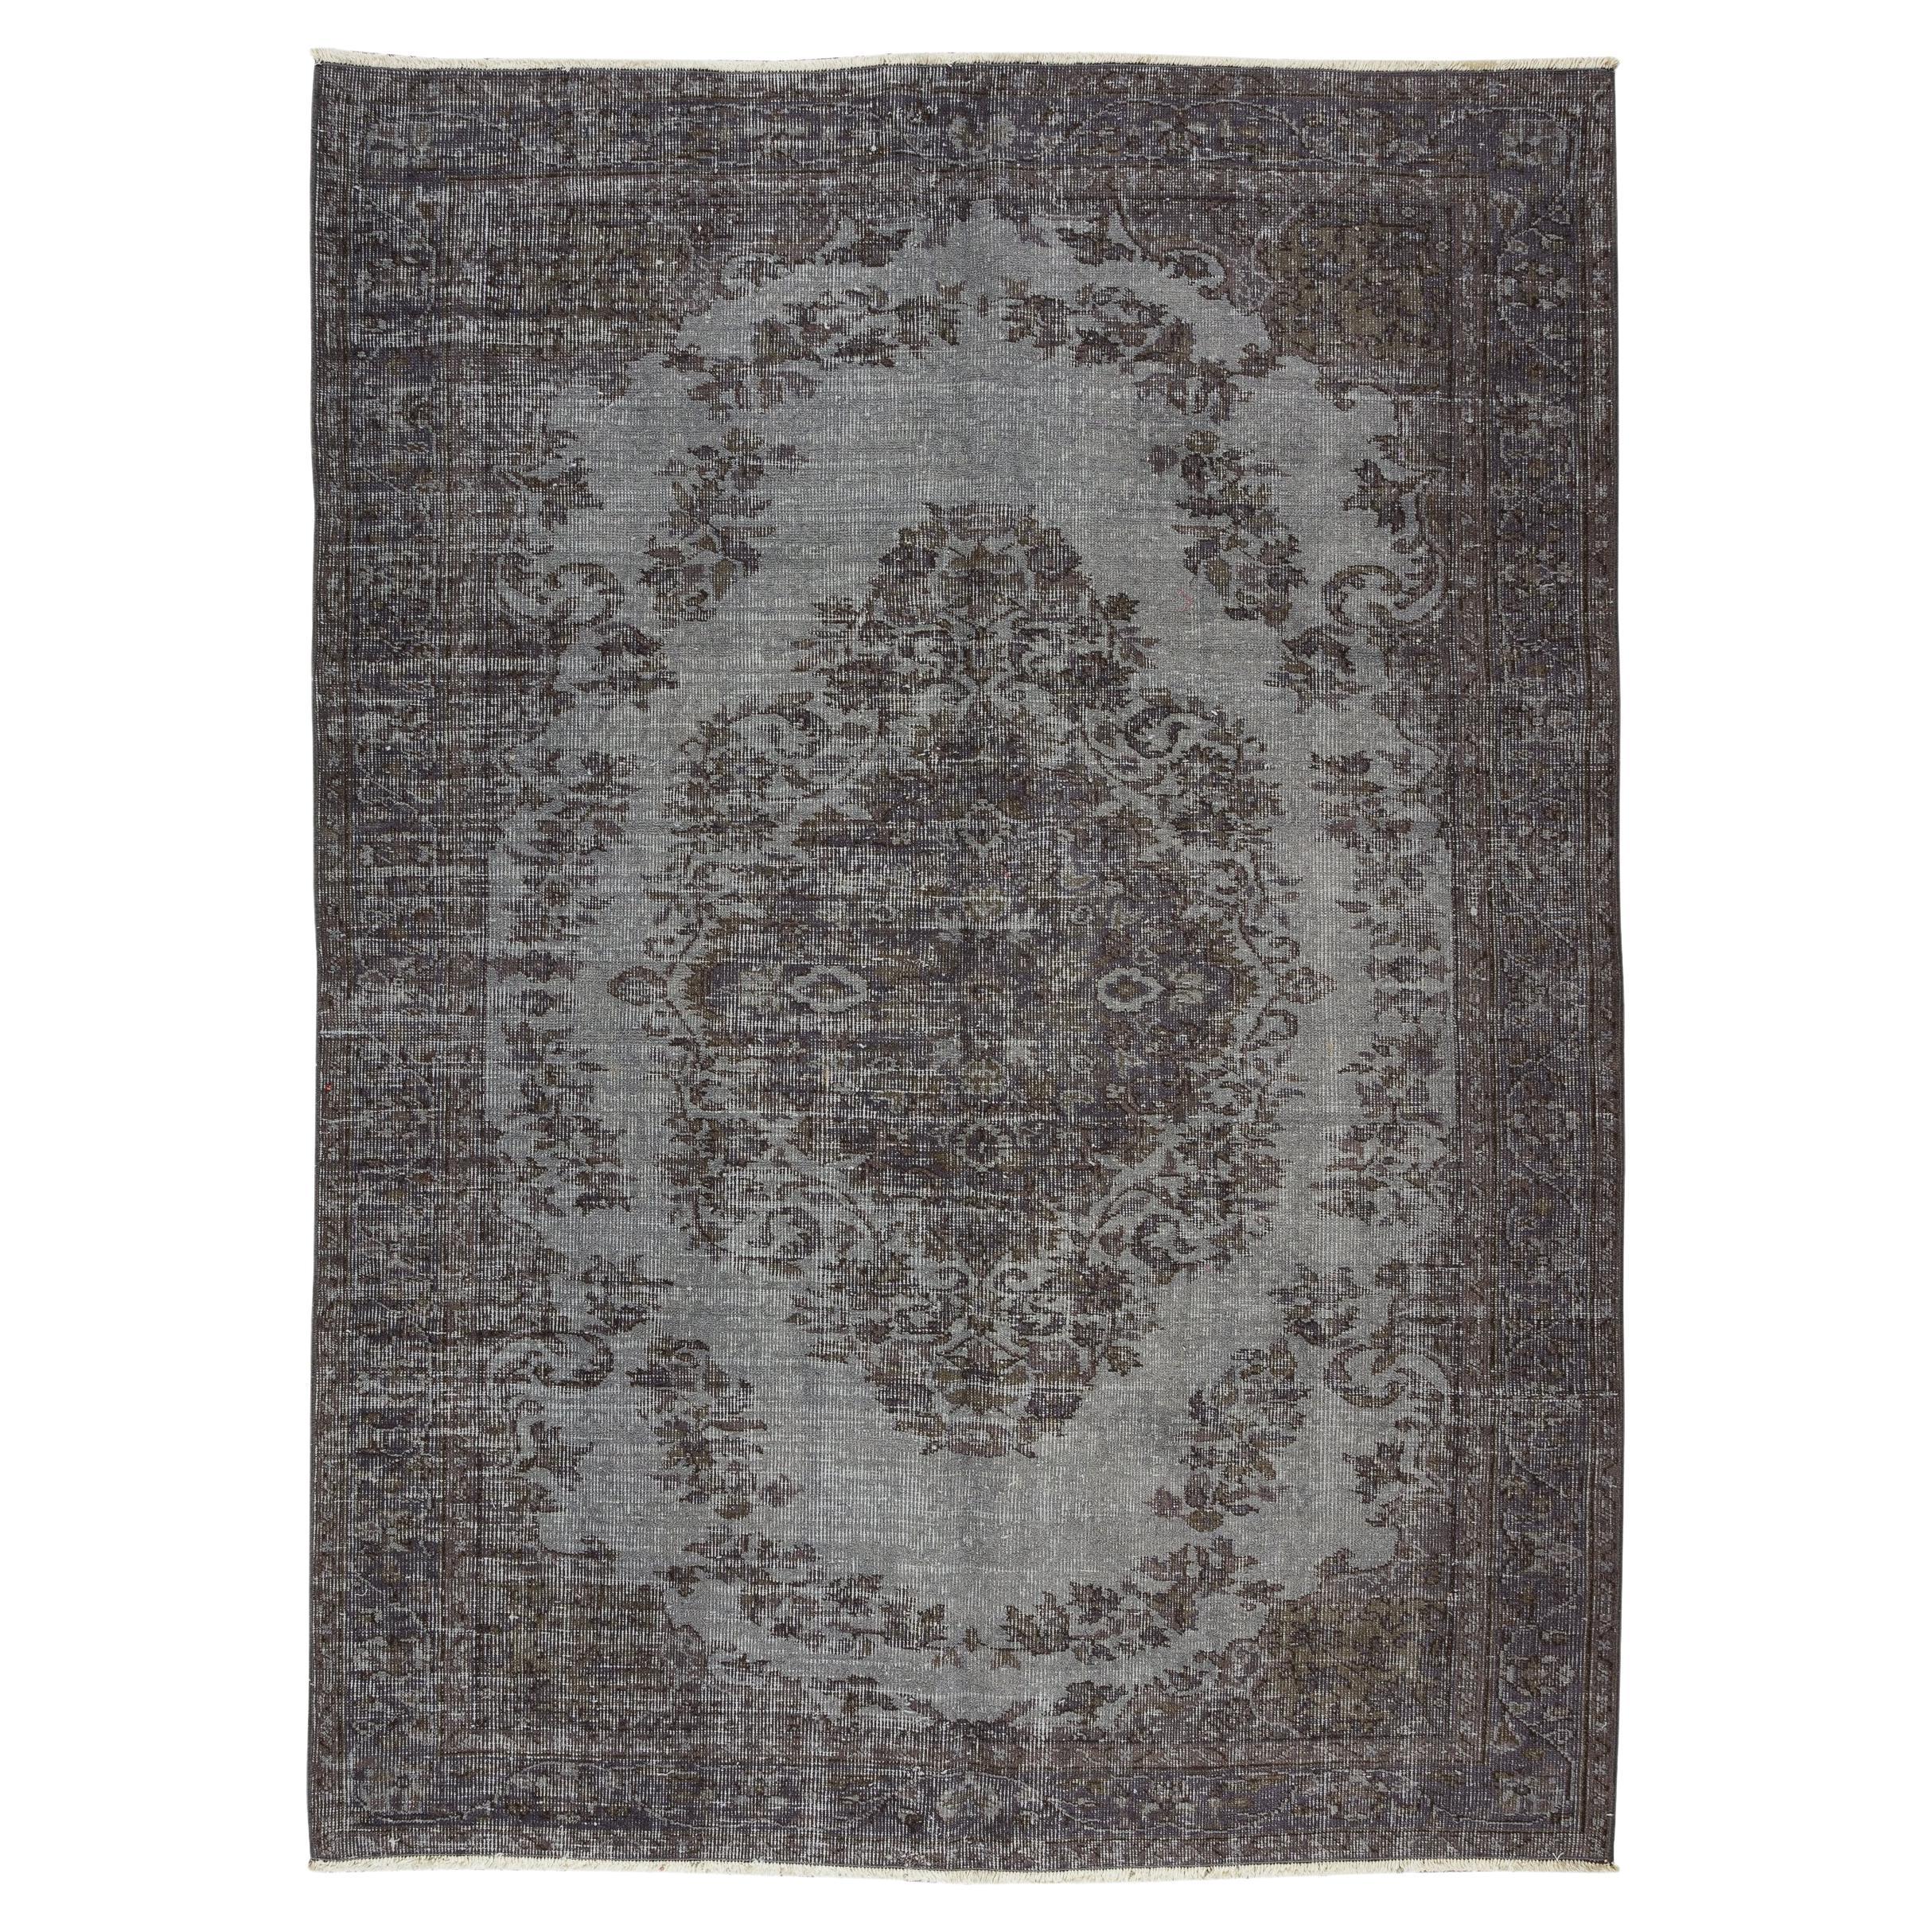 5,5x7.6 Ft Vintage-Teppich im Medaillon-Design in Grau, handgeknüpft in der Türkei